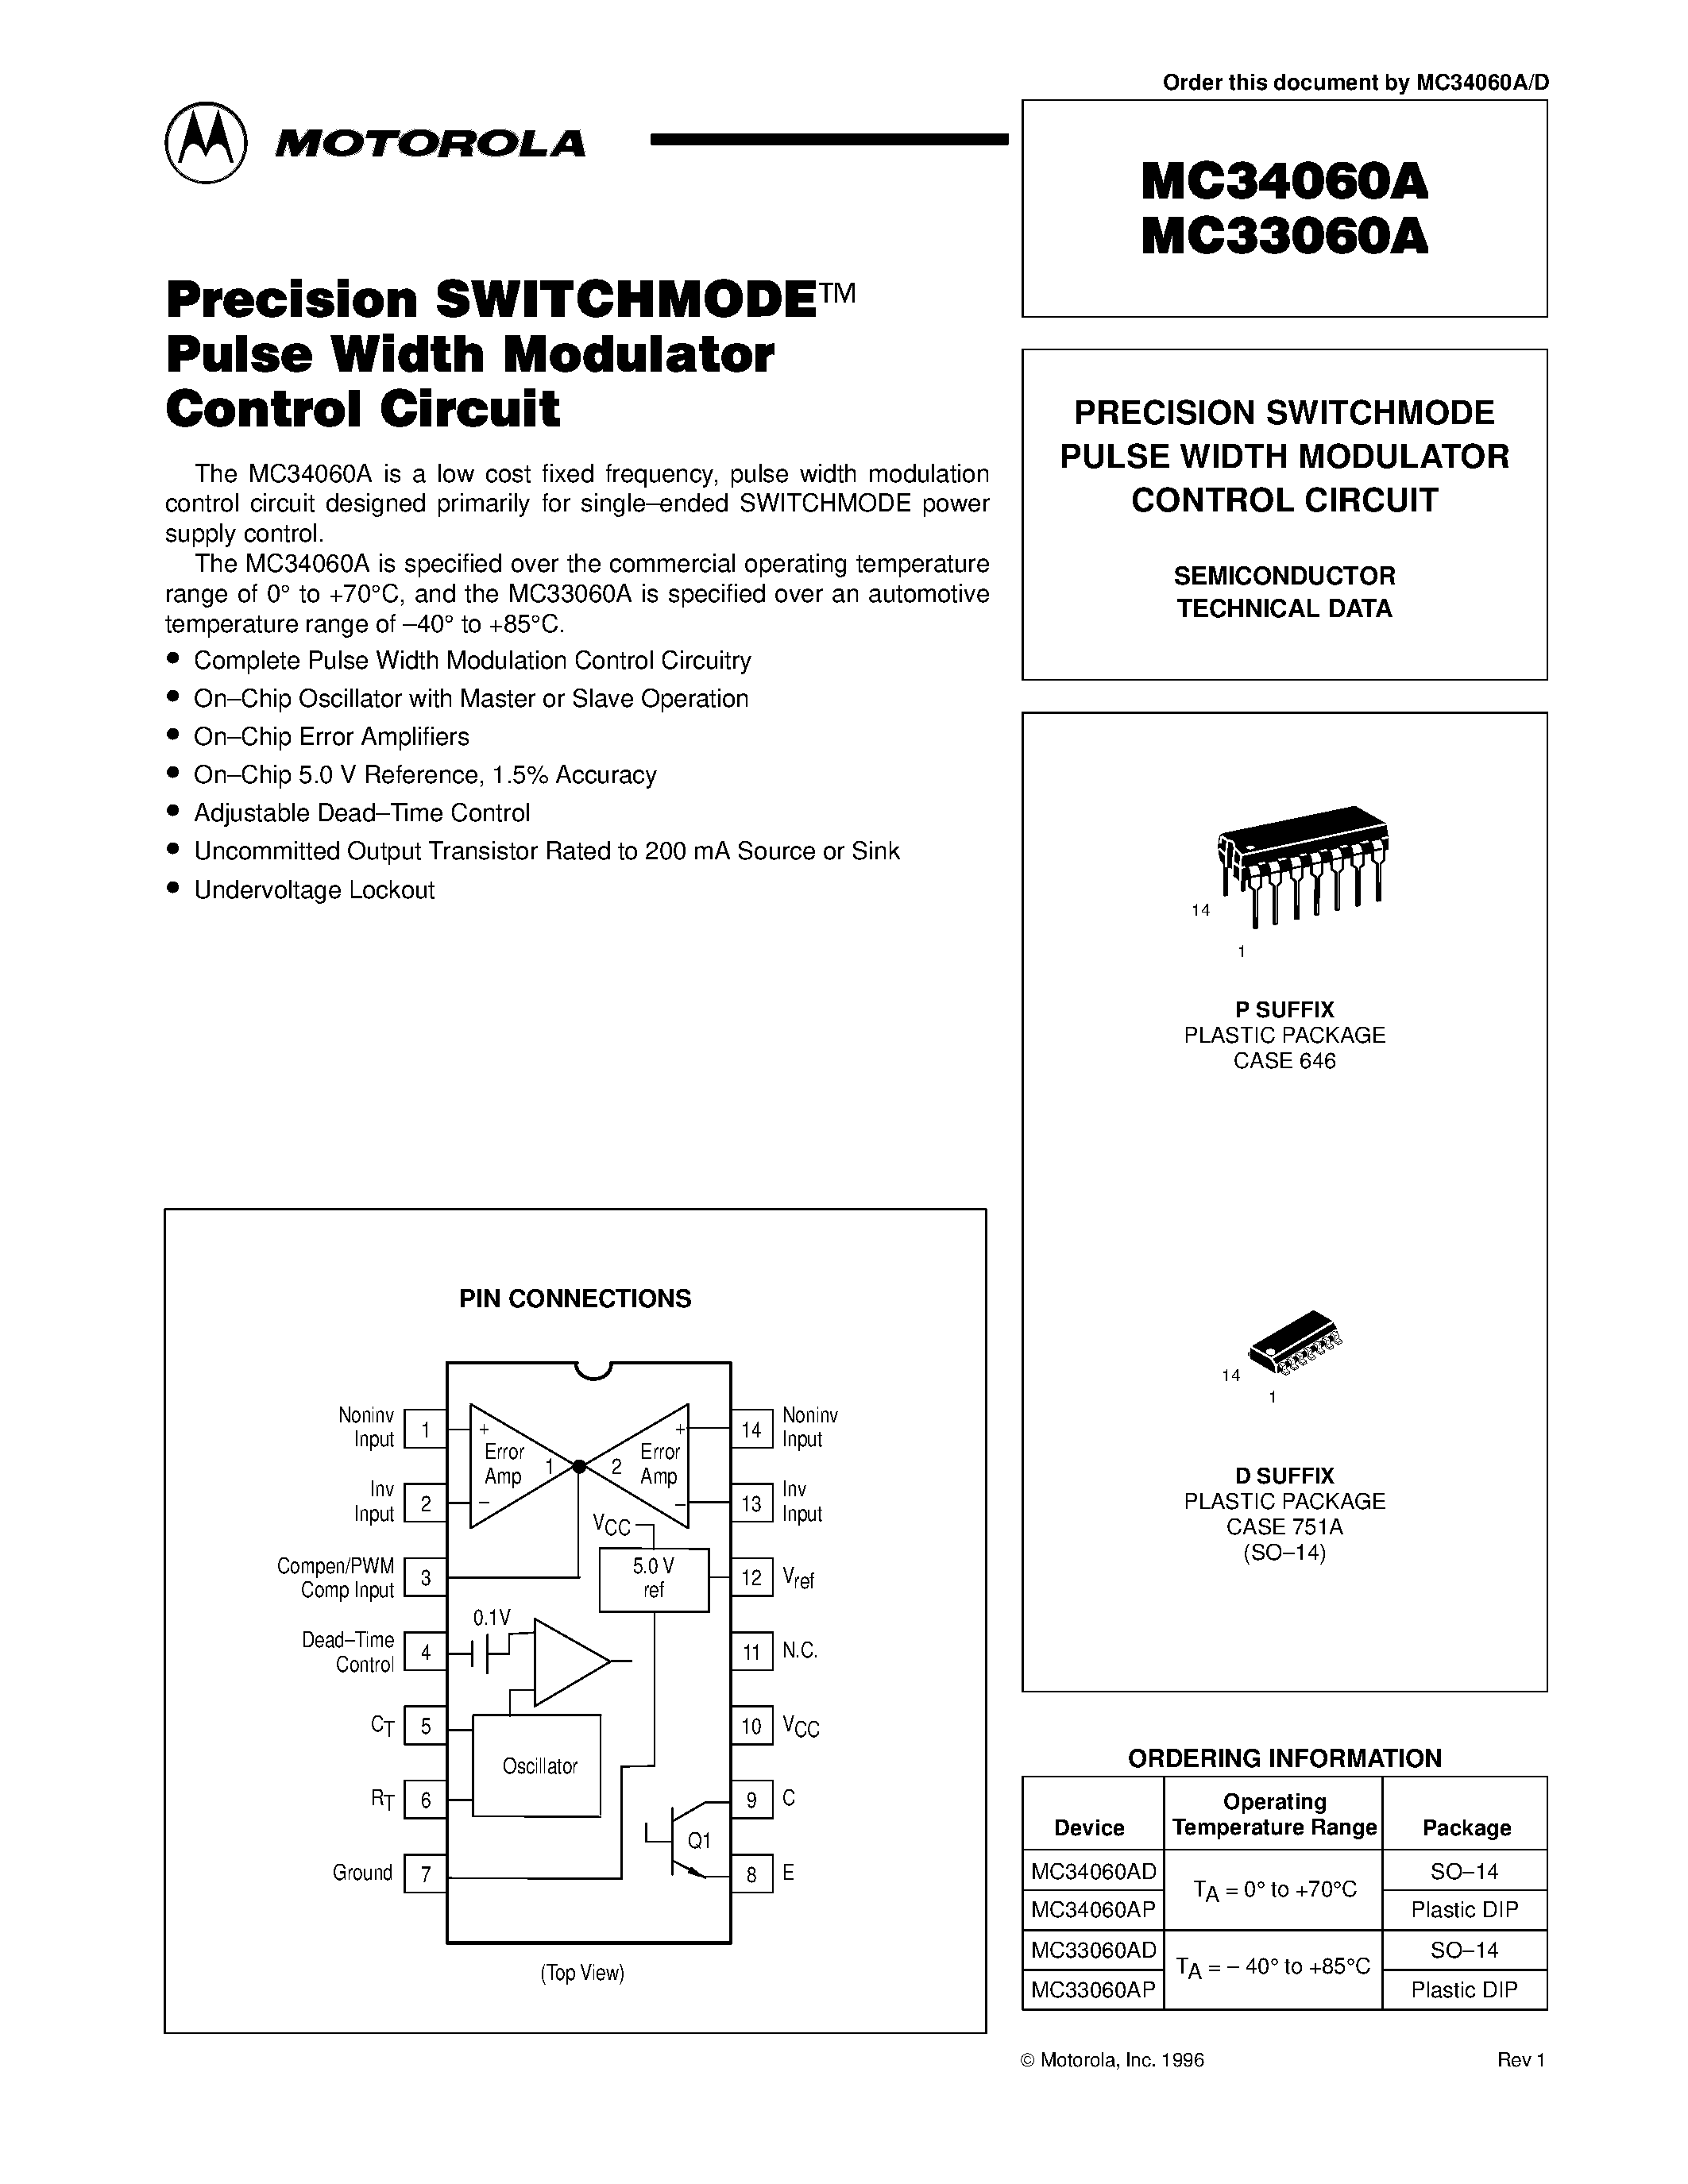 Даташит MC33060A - (MC33060A / MC34060A) PRECISION SWITCHMODE PULSE WIDTH MODULATOR CONTROL CIRCUIT страница 1